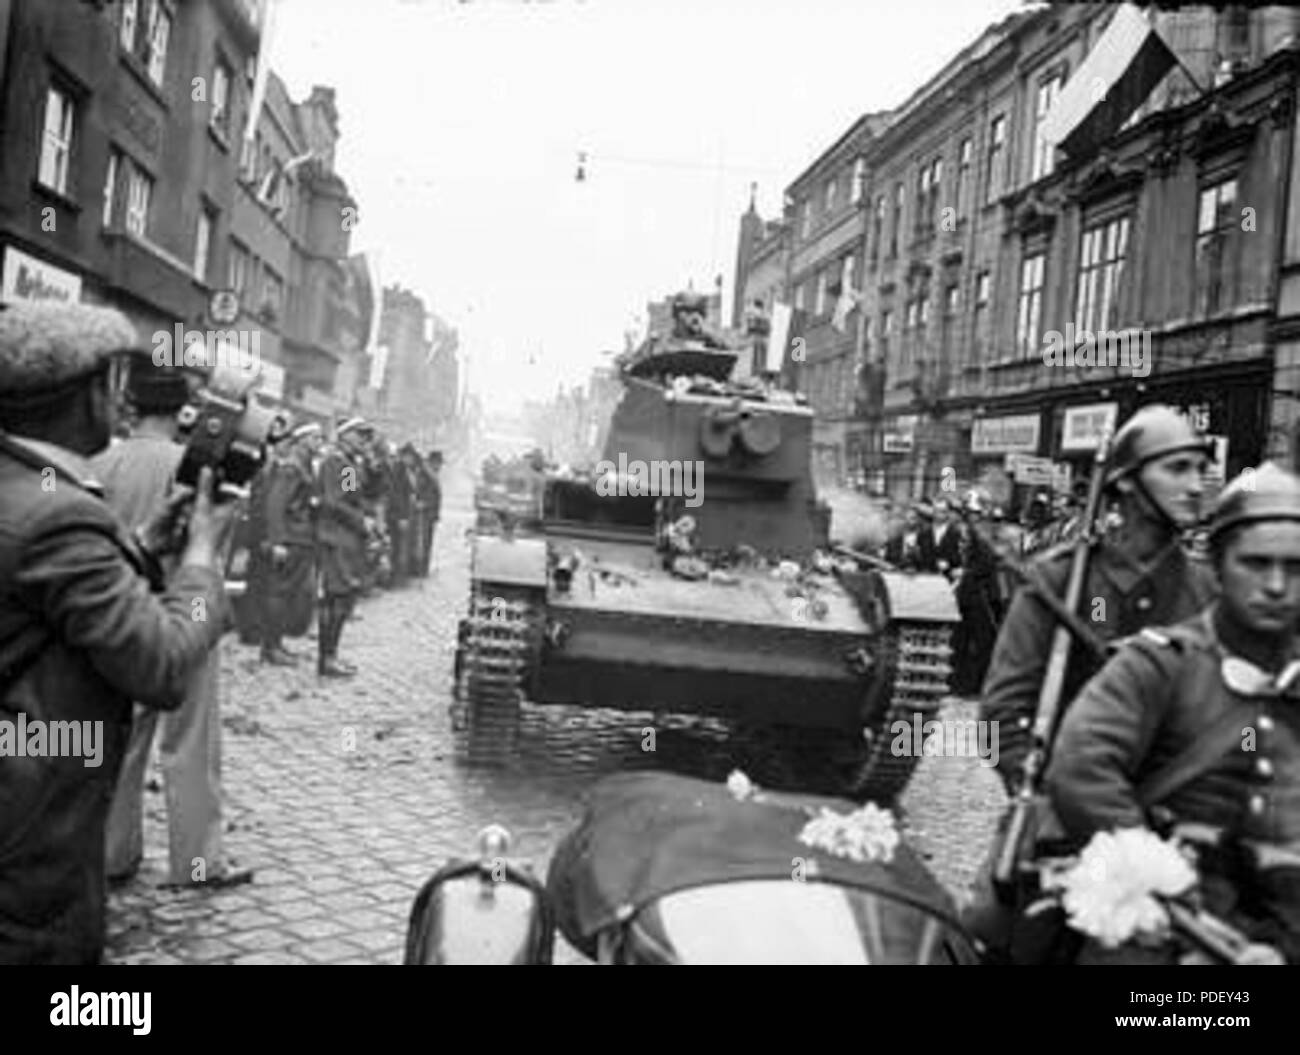 380 Wojska pancerne podczas defilady widoczny czołg lekki 7 TP. Z lewej mężczyzna z ręczną kamerą filmową Stock Photo